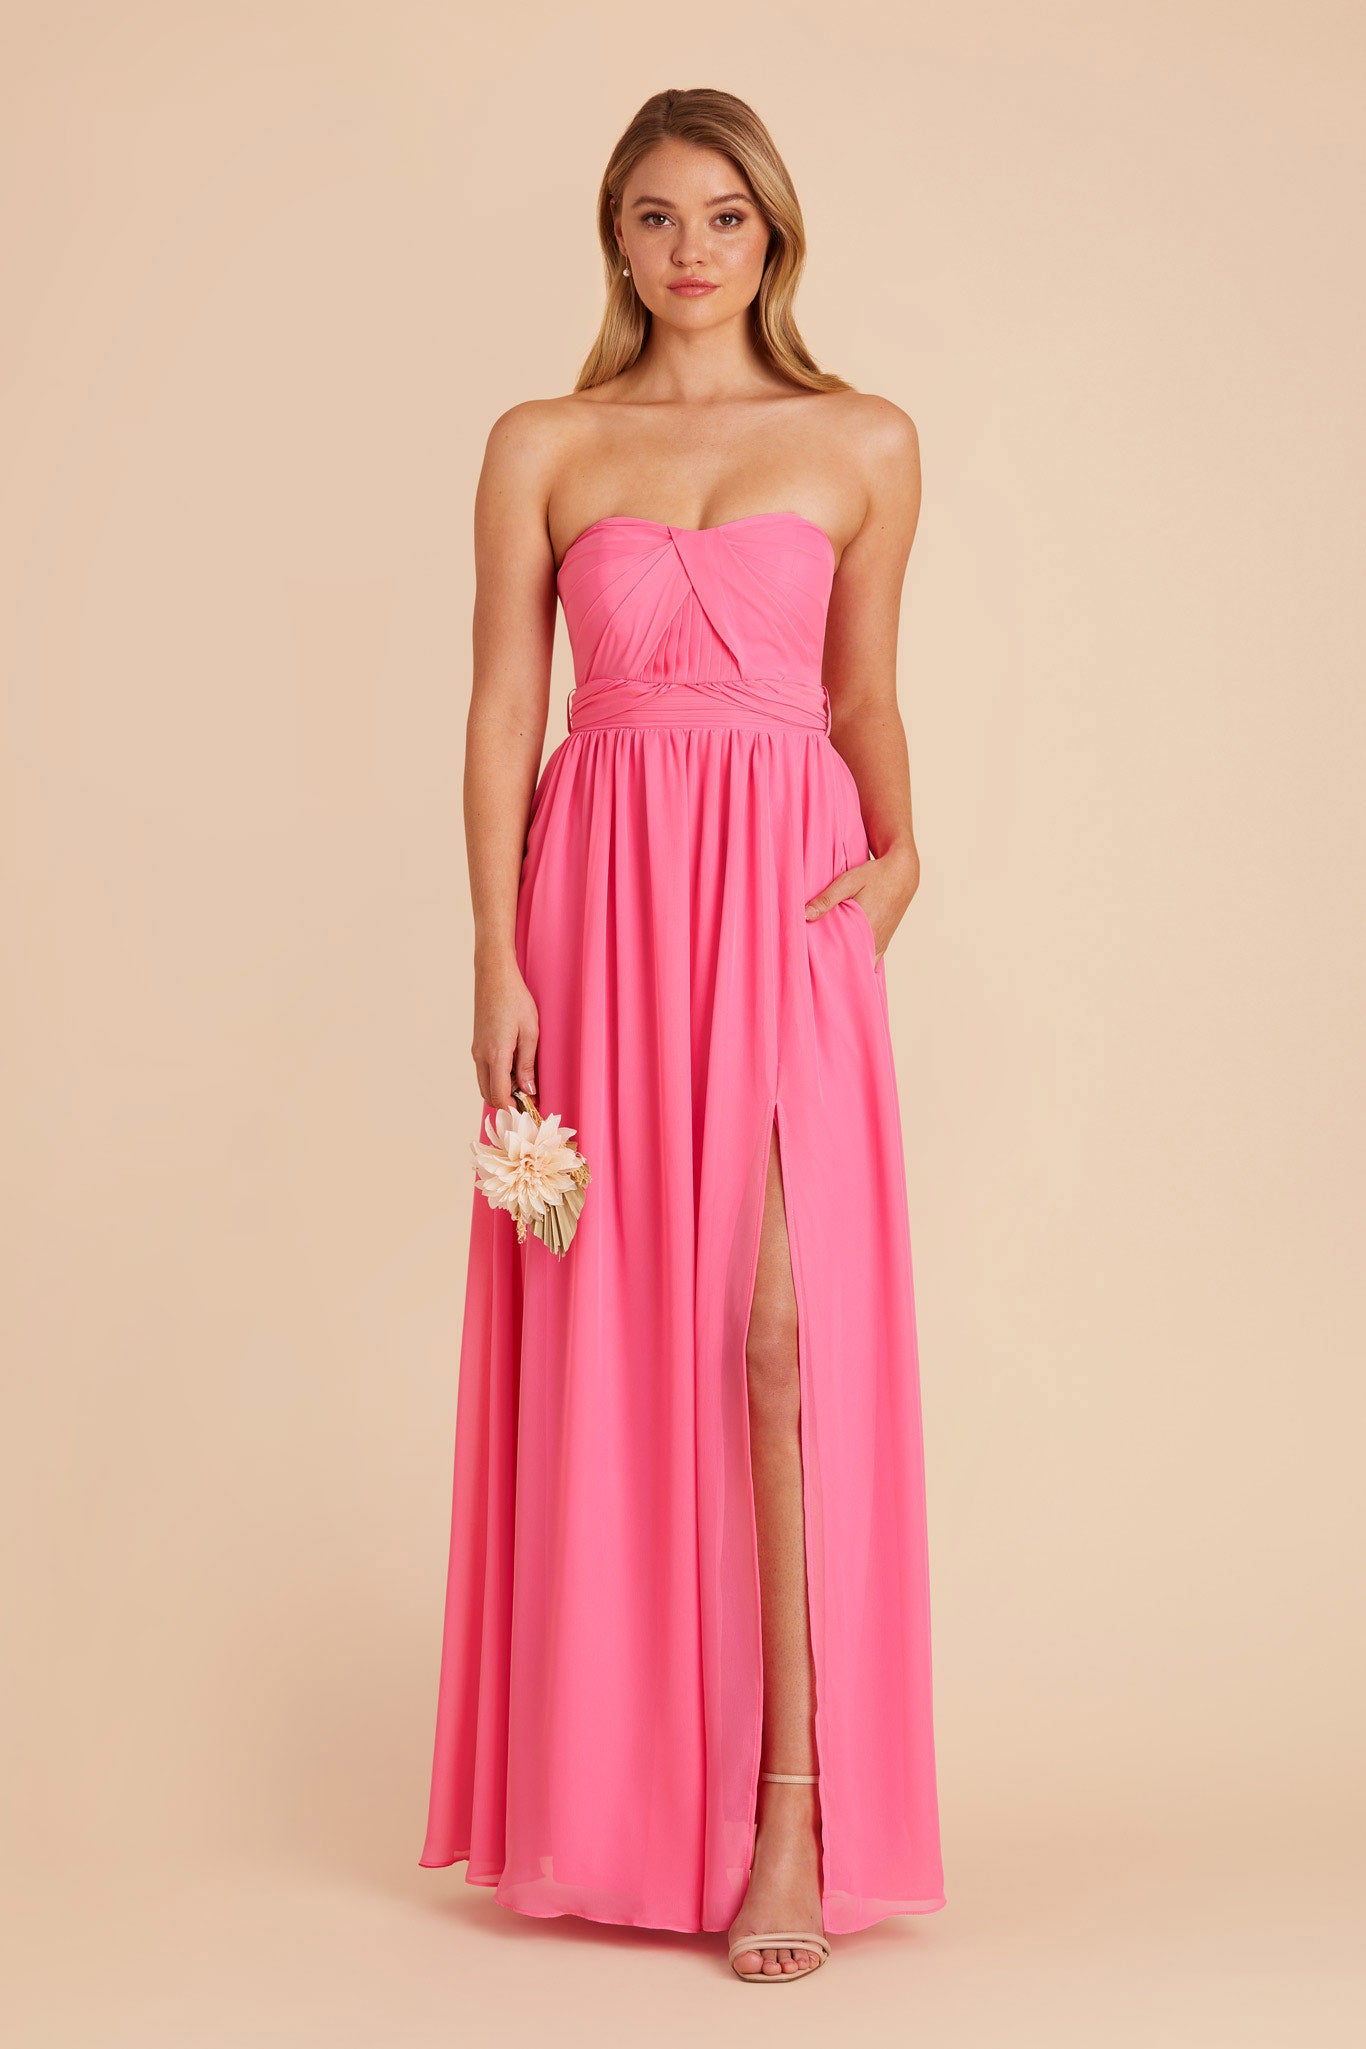 Bon Bon Pink Grace Convertible Dress by Birdy Grey